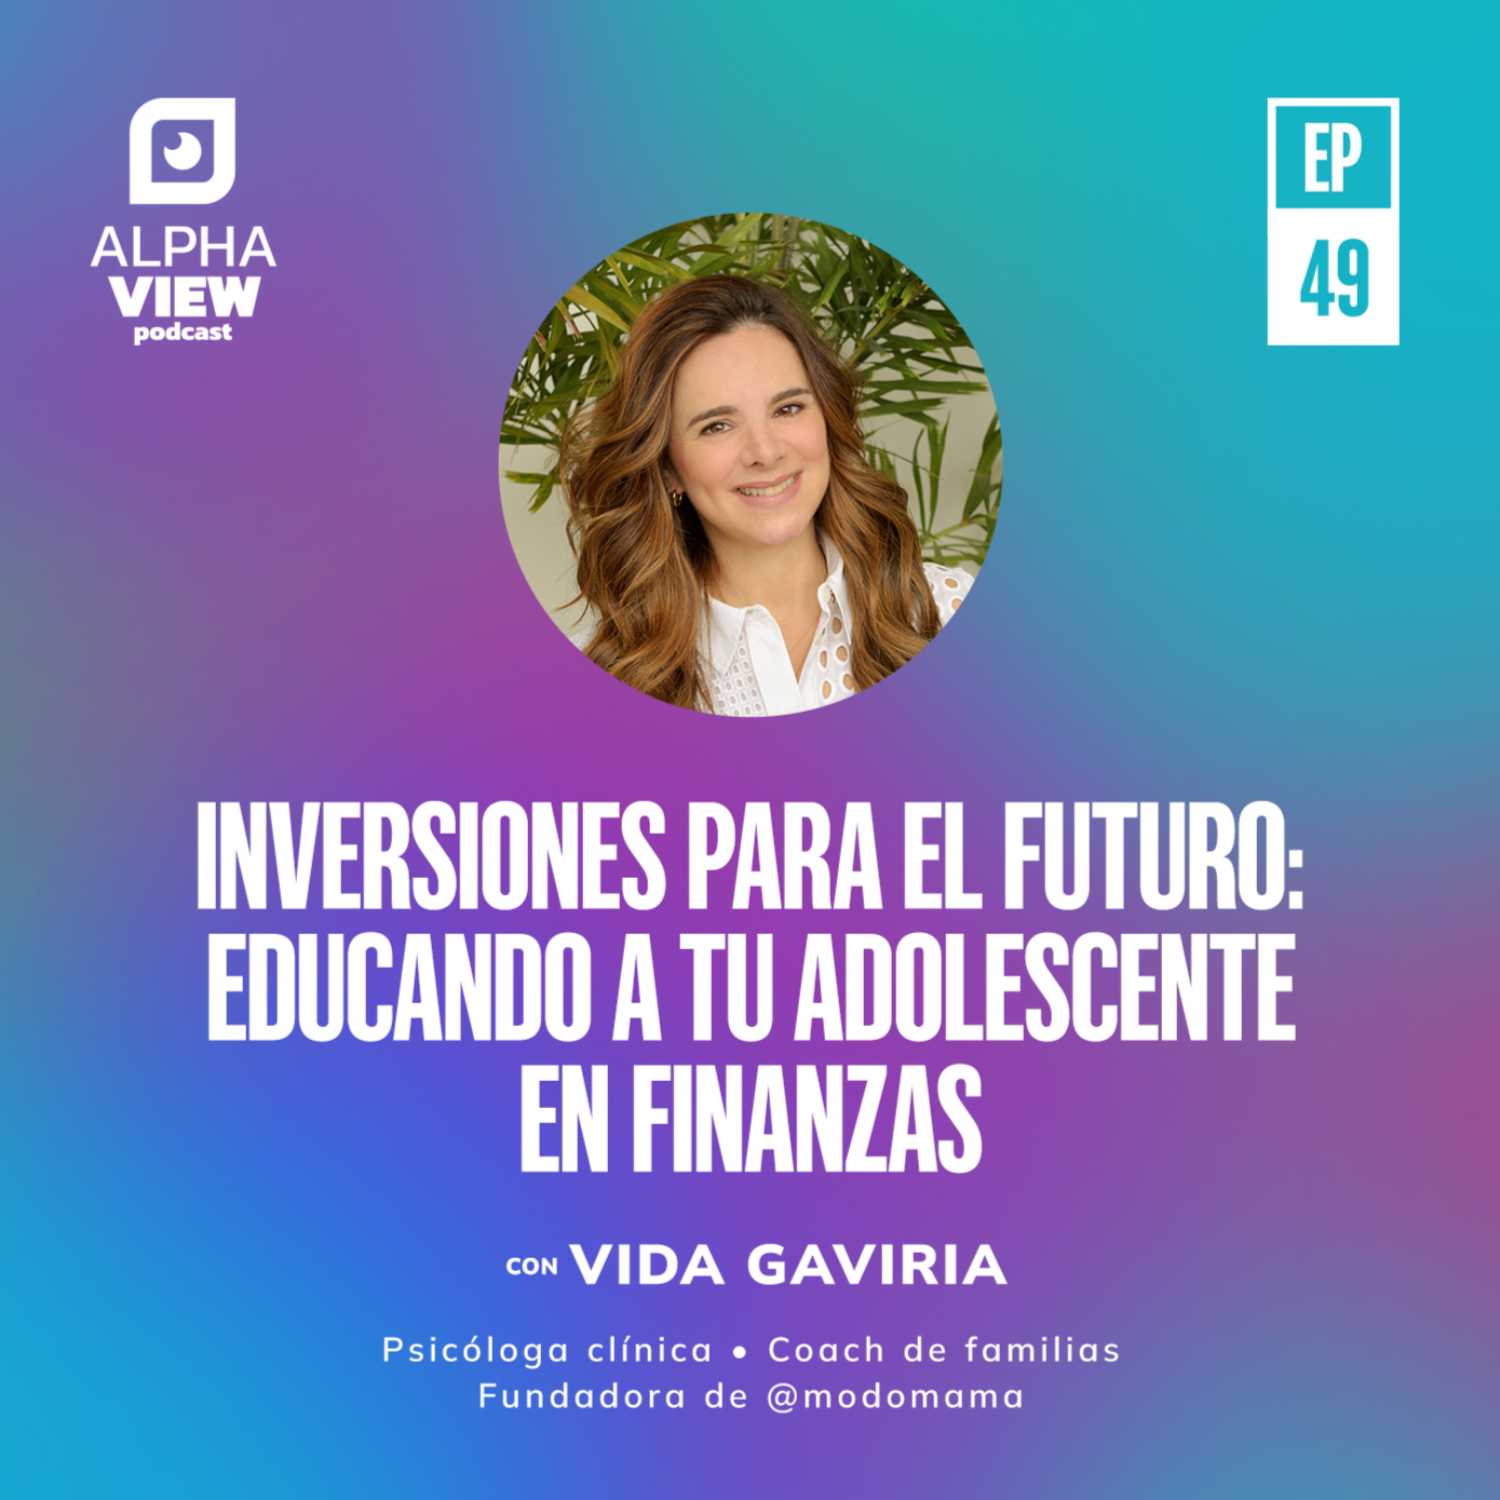 "Inversiones para el futuro: Educando a tu adolescente en finanzas" con Vida Gaviria